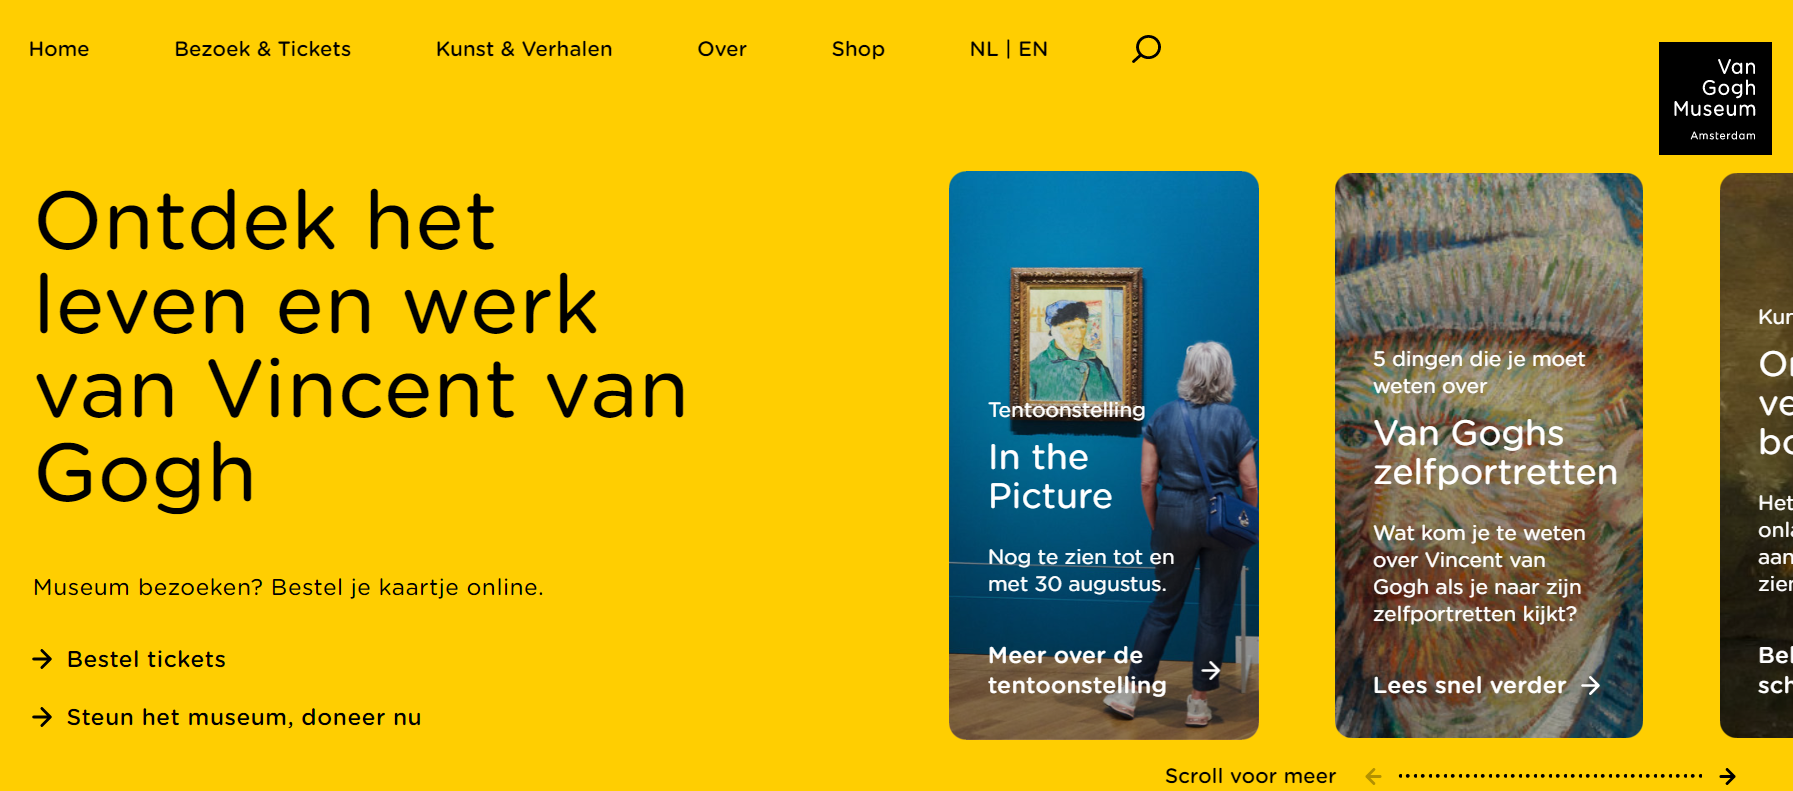 Van Gogh museum screenshot website